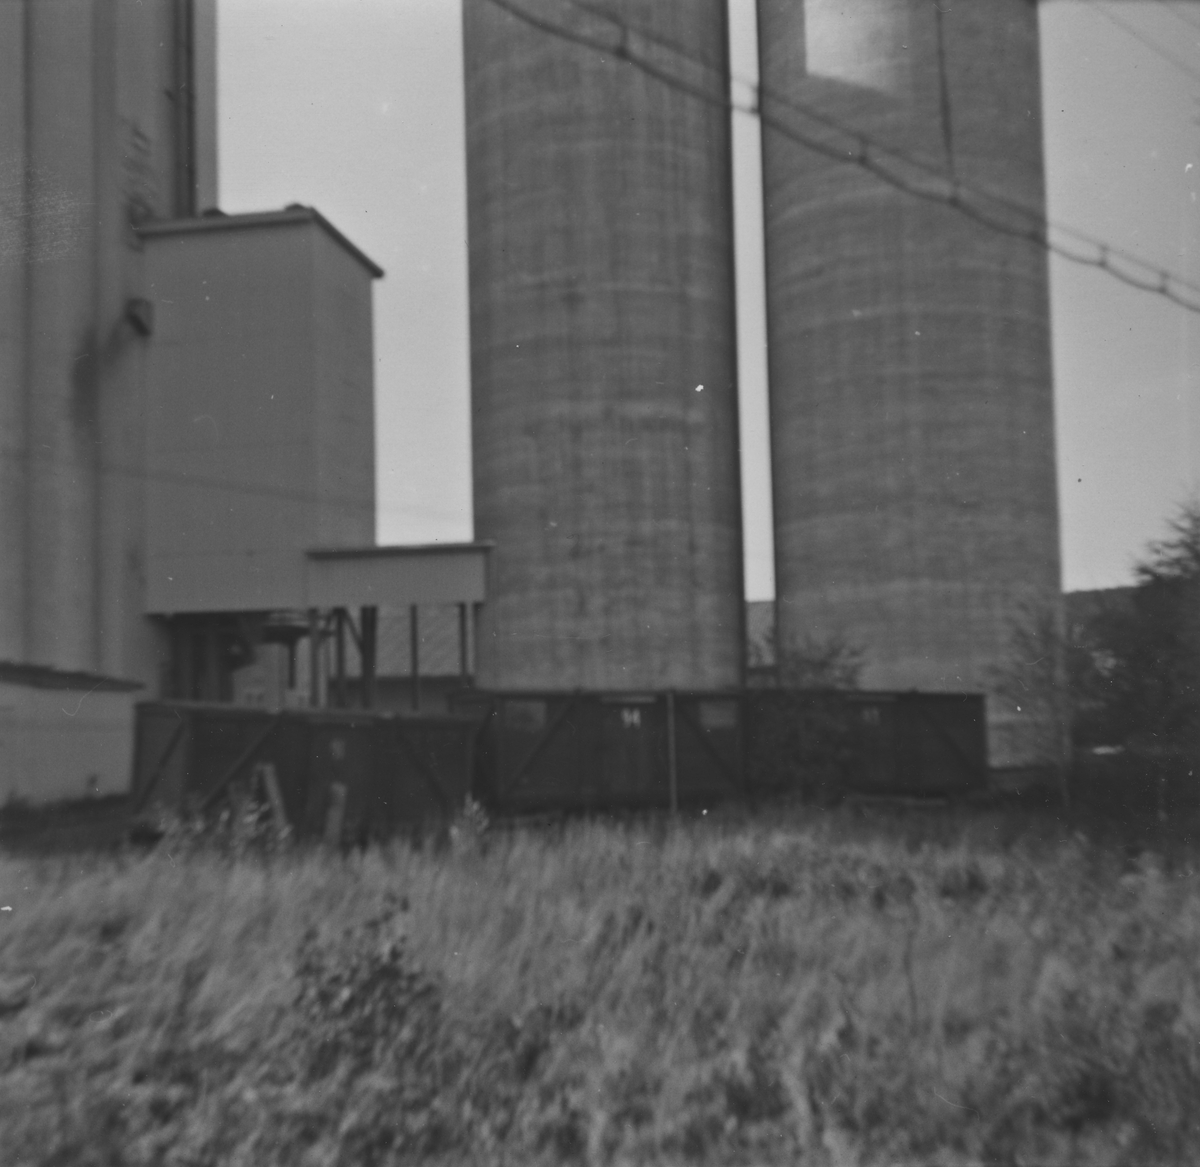 Løftekasser fra UHB ved Bjørkelangen kornsilo syv år etter nedleggelsen. To av løftekassene ble senere overtatt av museumsbanen.